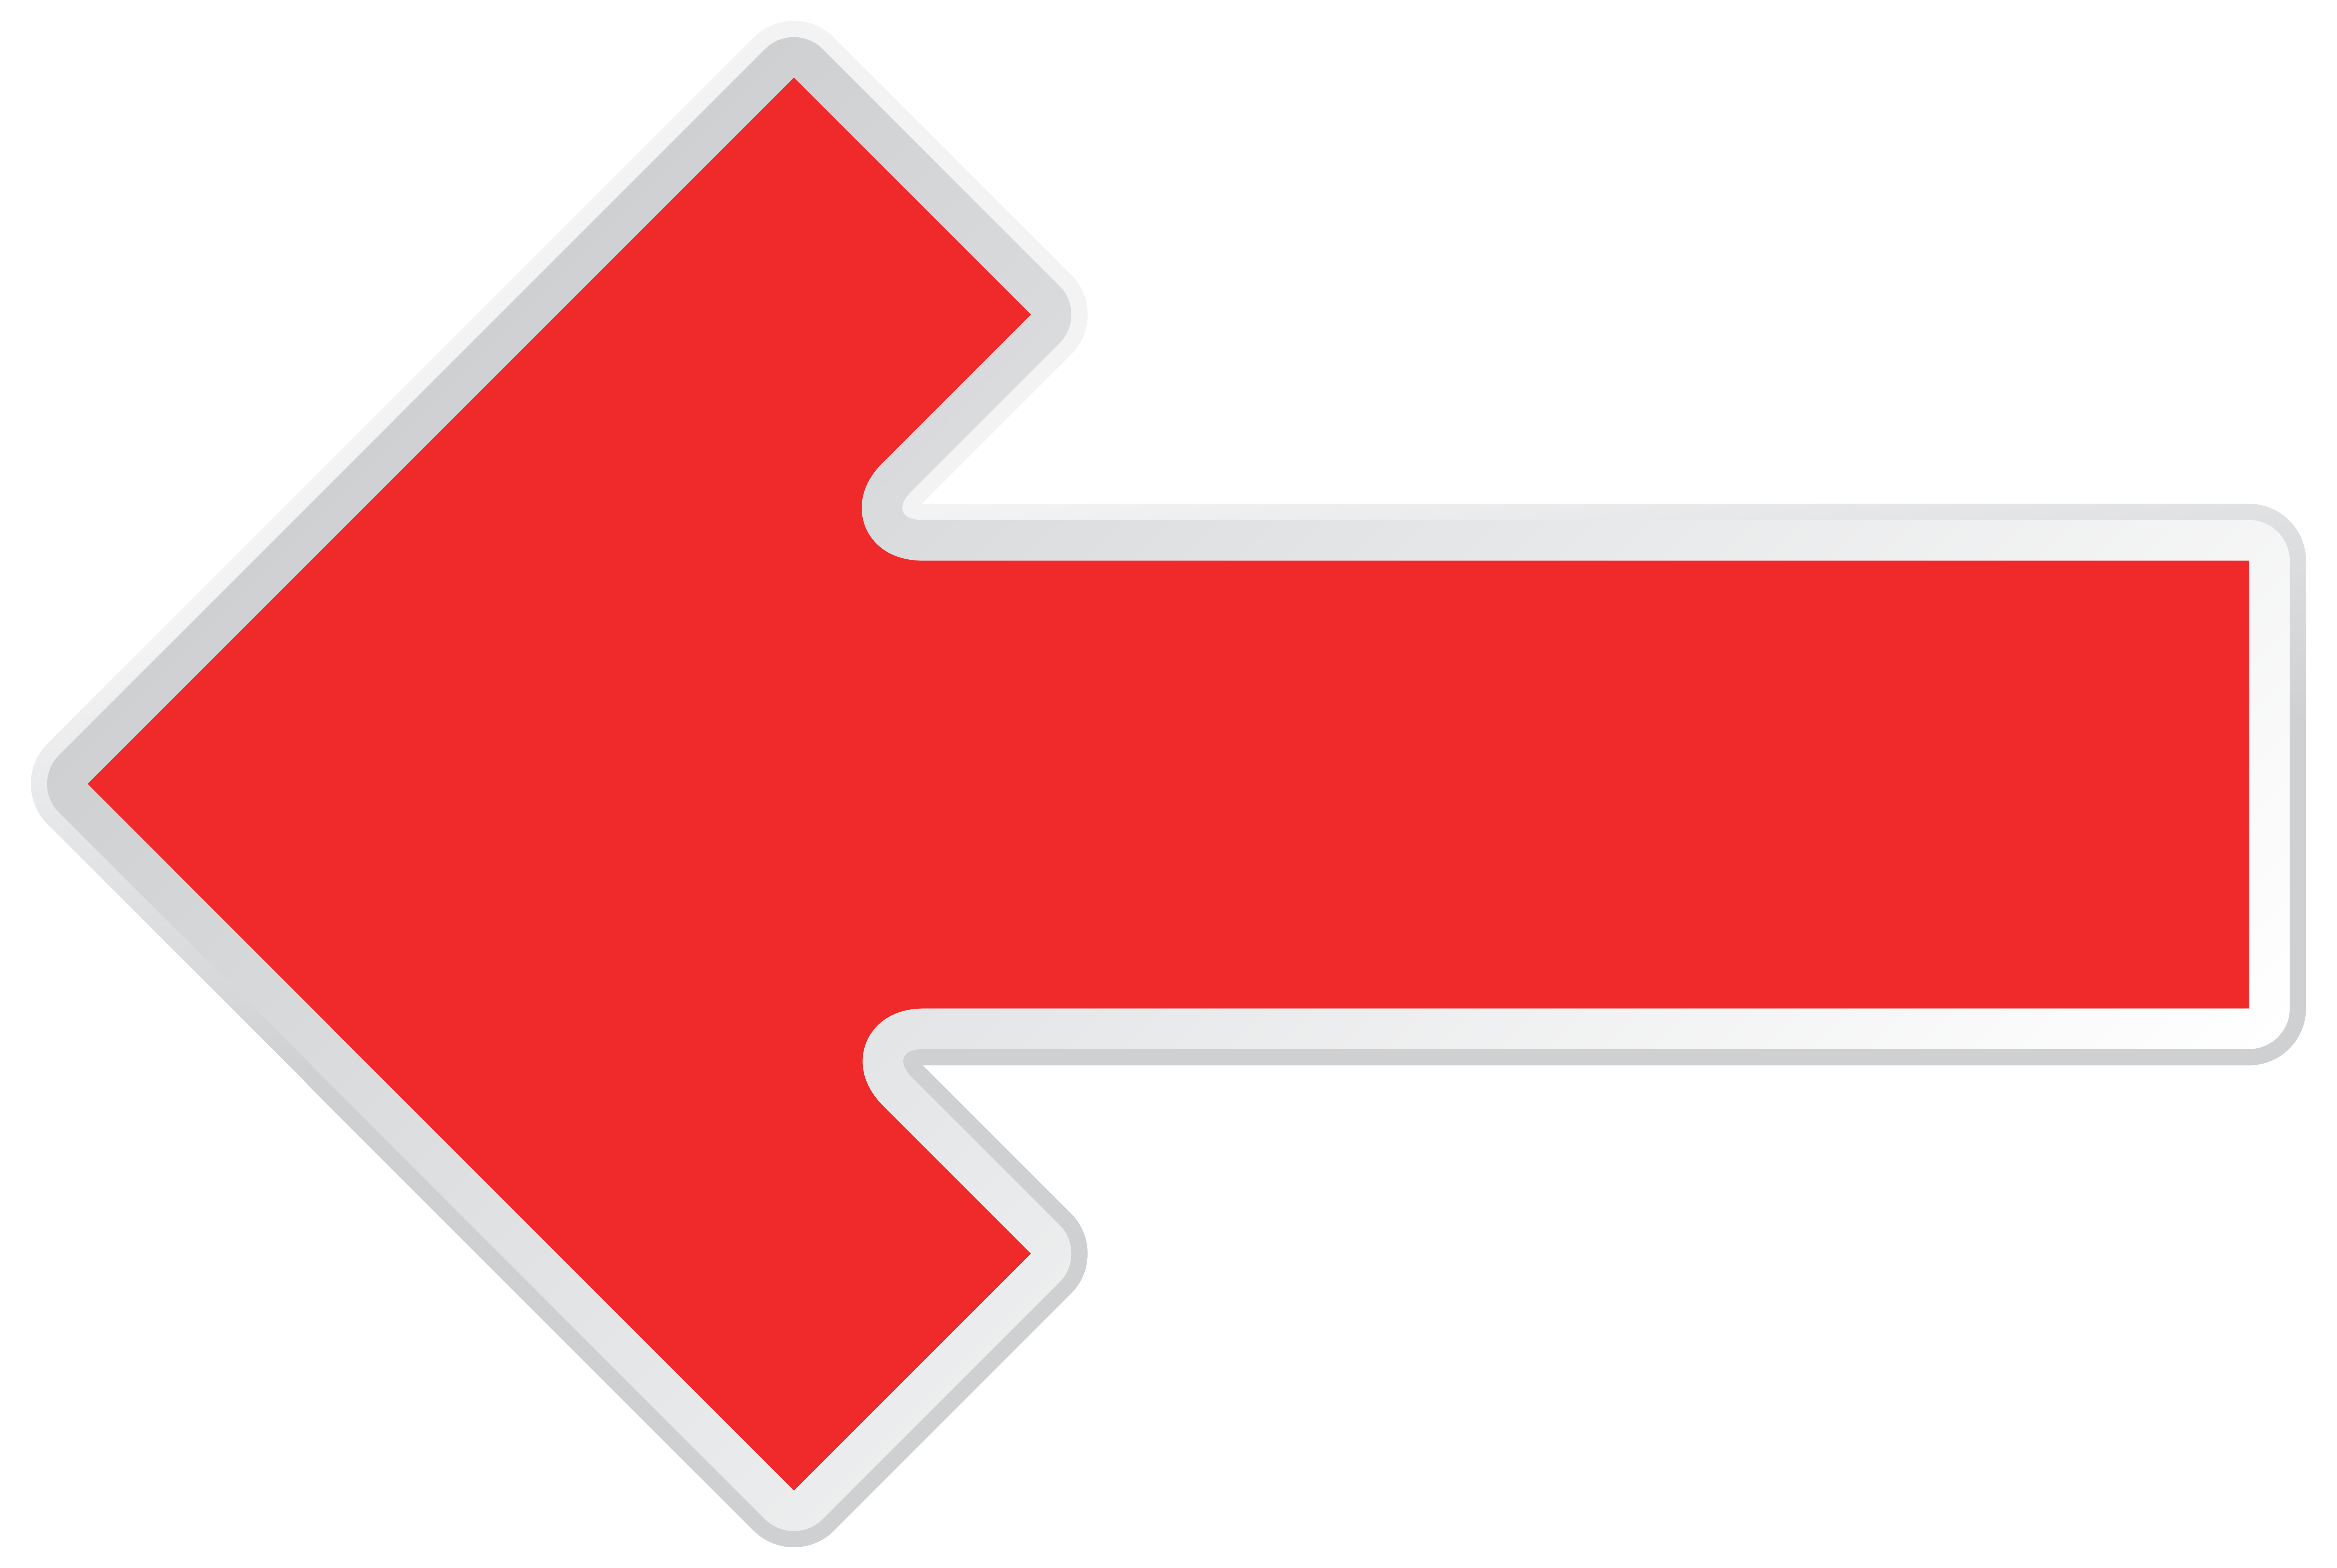 Rouge gauche flèche PNG Image Transparente